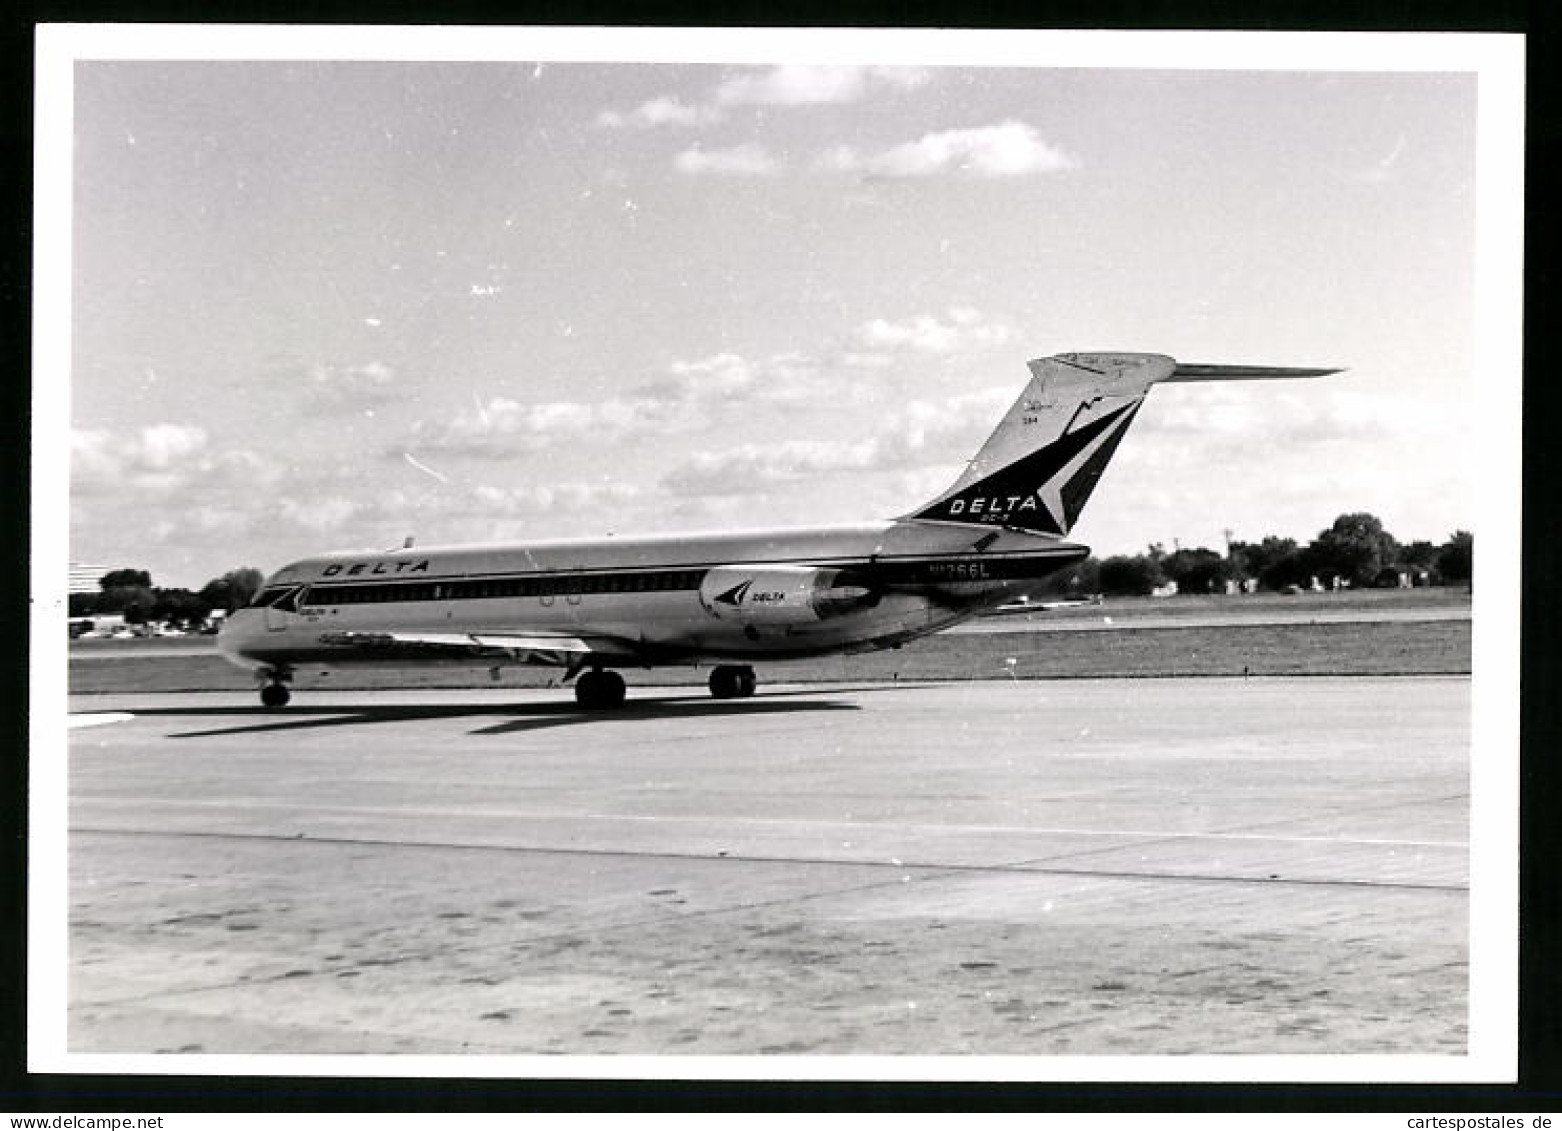 Fotografie Flugzeug Douglas DC-9, Passagierflugzeug Der Delta Airlines, Kennung N1266L  - Aviation